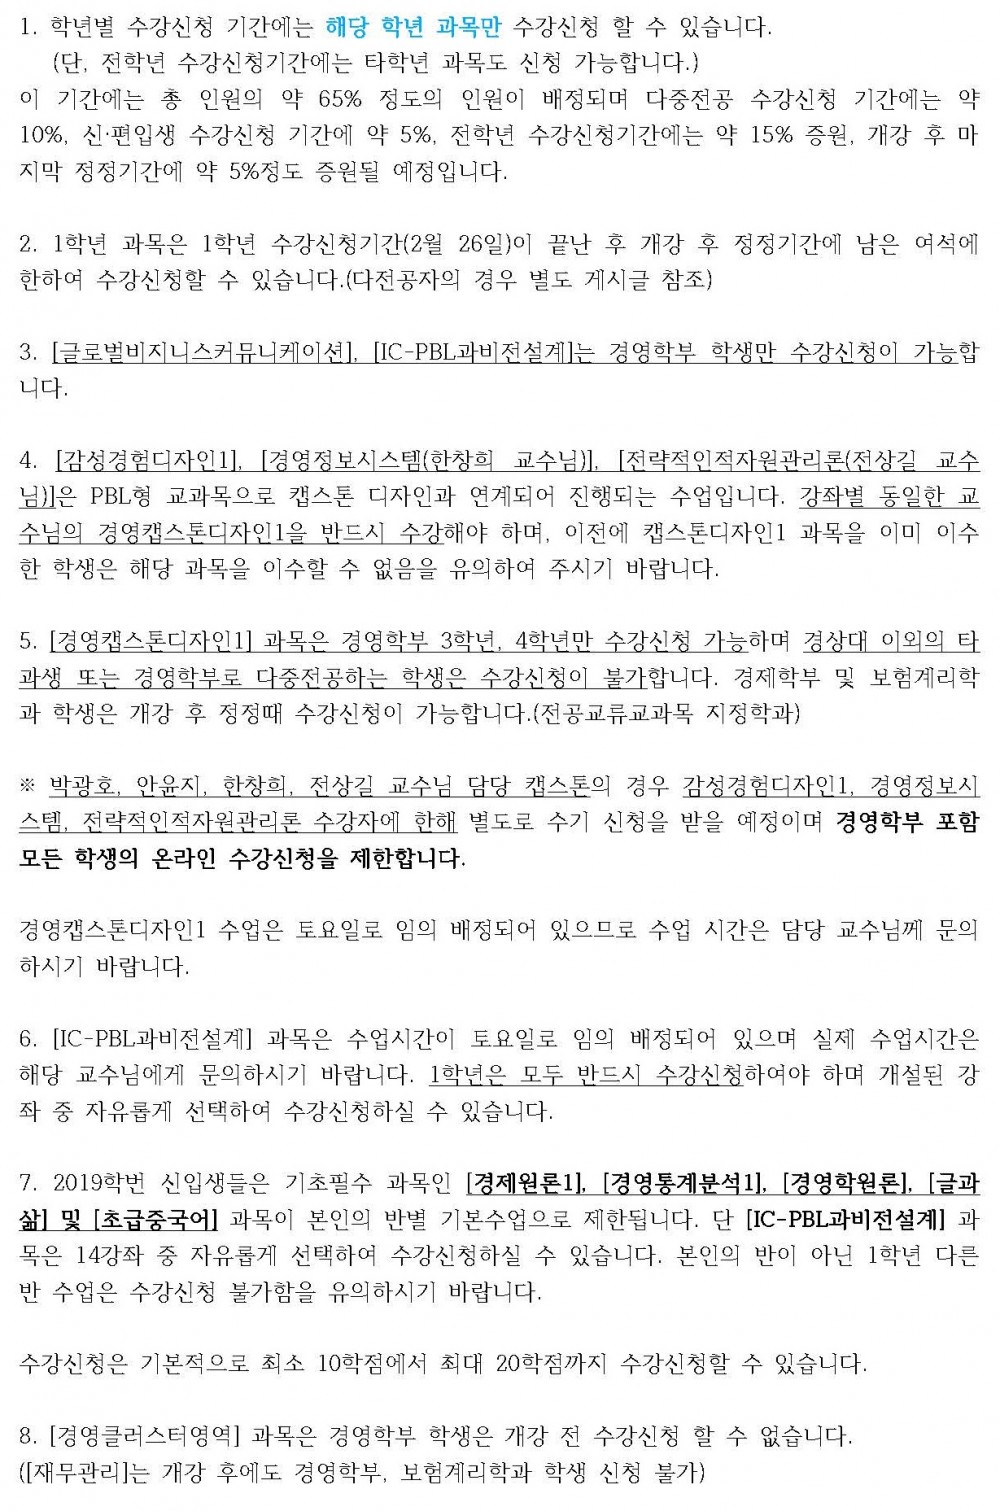 2019-1 [경영학부] 수강신청 안내(수정)_Page_2